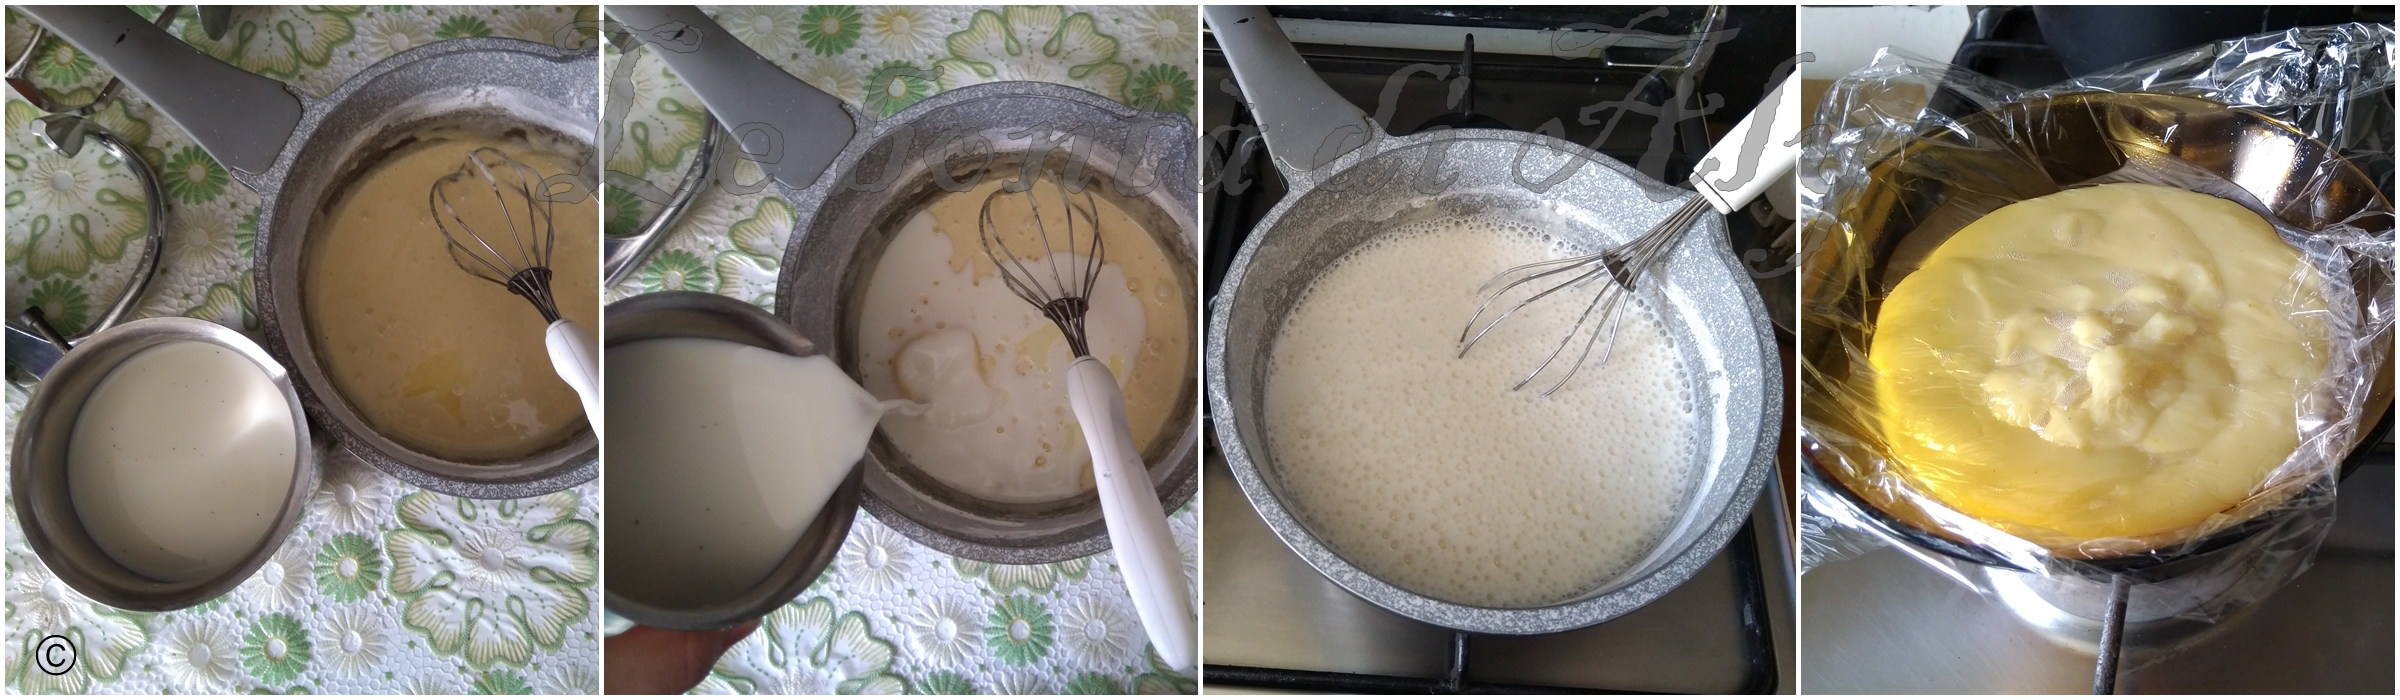 preparazione crema pasticcera